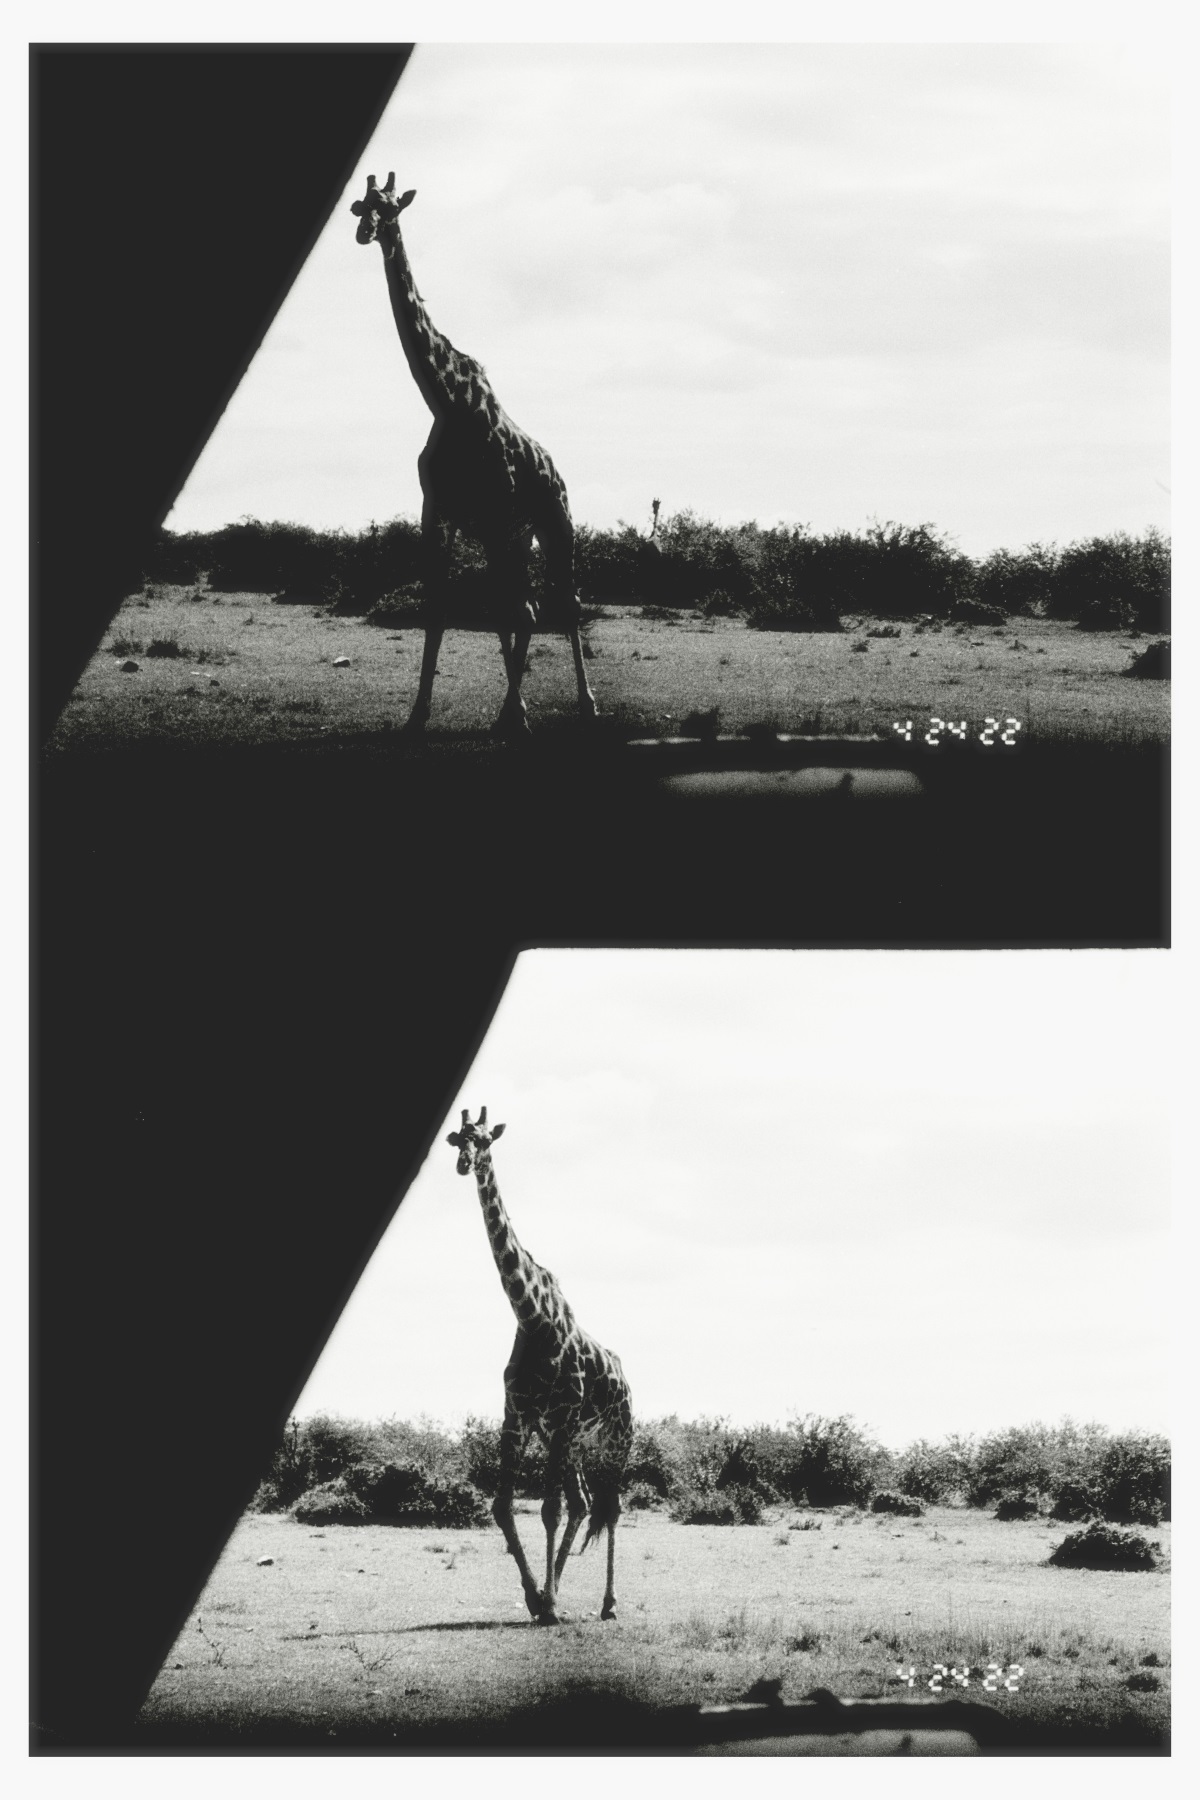 Encontramos jirafas en nuestro primer safari.